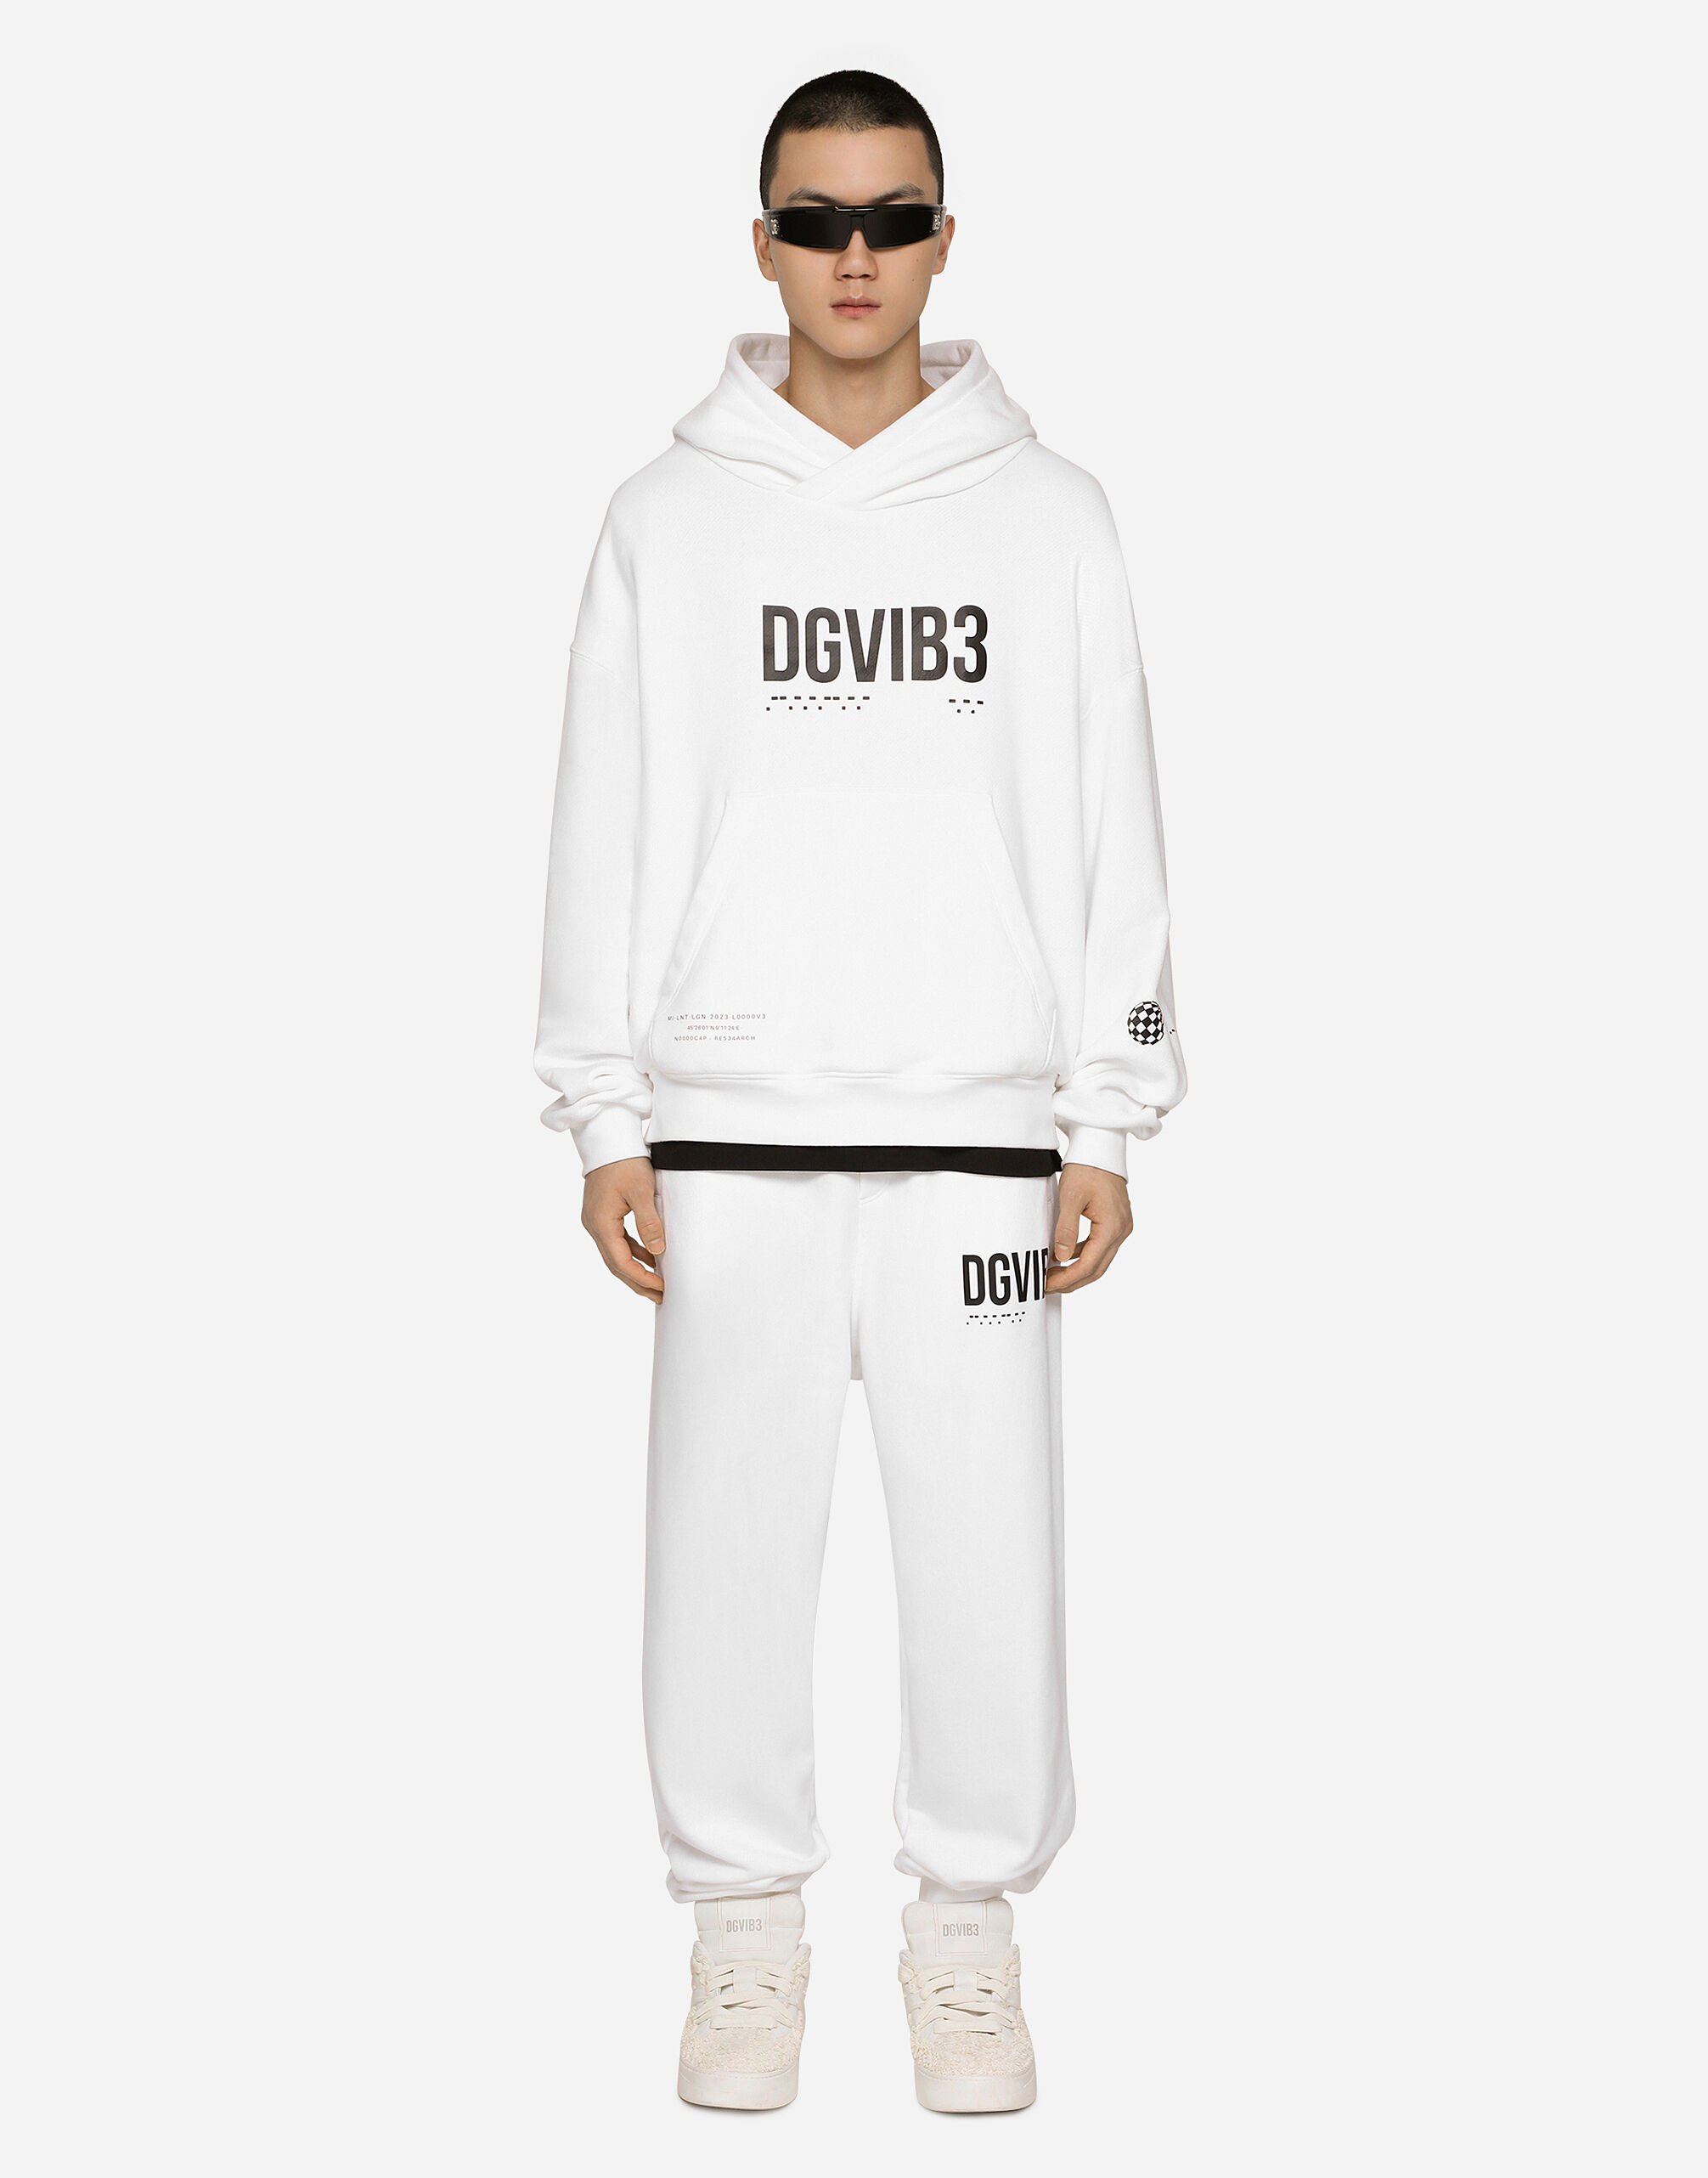 ホワイトのメンズ Jersey jogging pants with DGVIB3 print and logo 